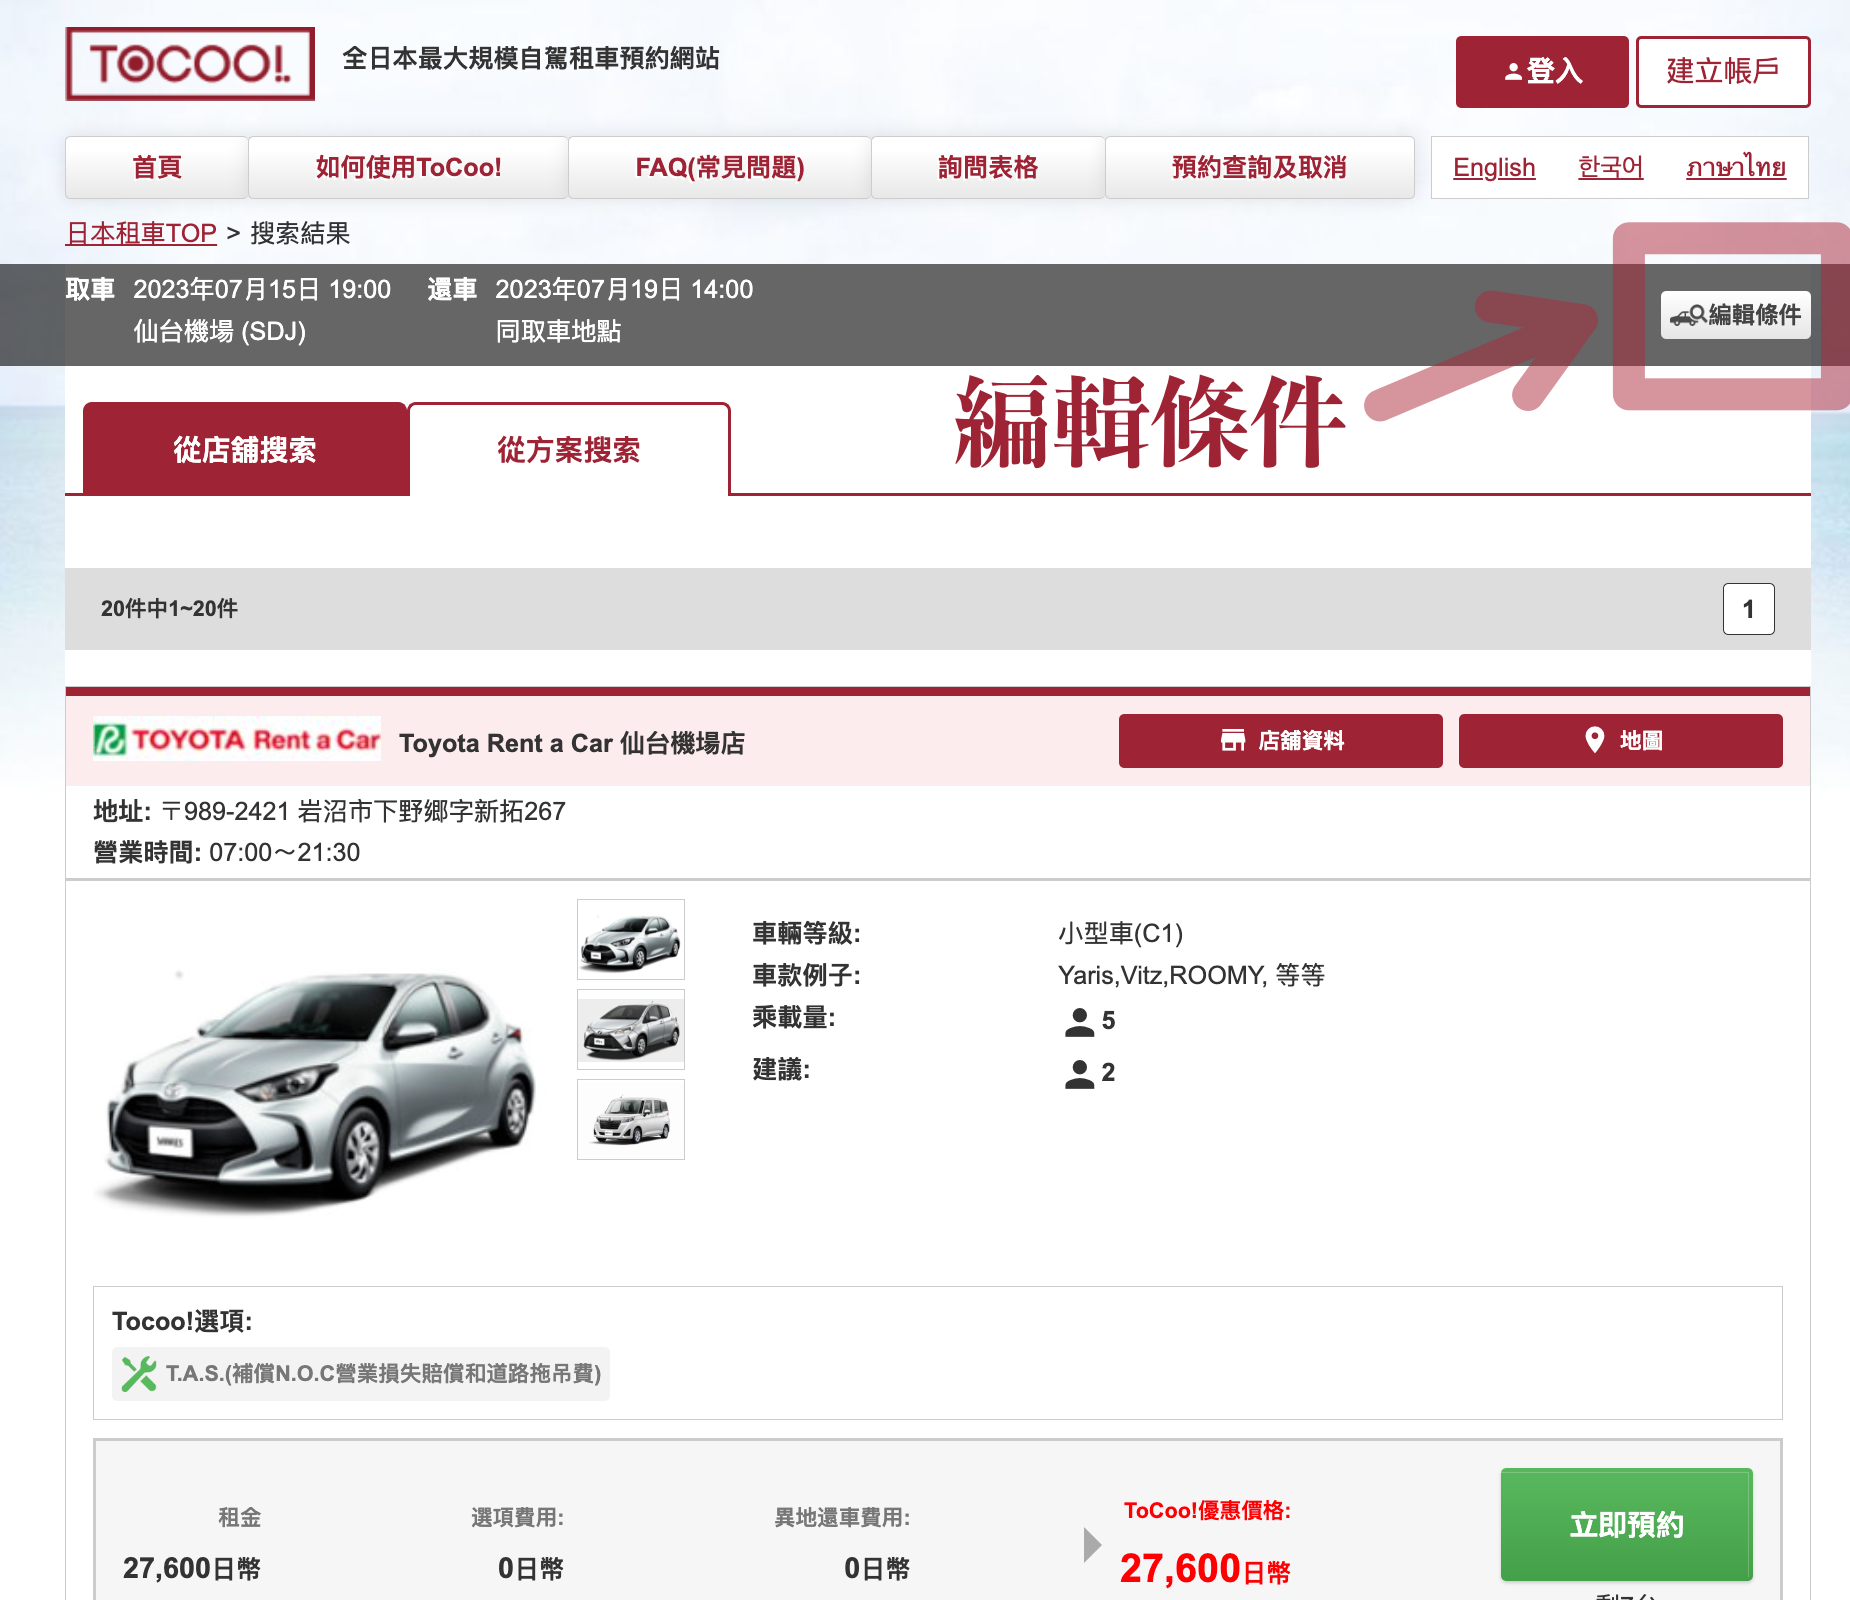 日本租車推薦 | 日本最大規模自駕租車預約網站 : ToCoo!，輕鬆搜尋最優惠價格 | 獨家專屬高速公路過路費吃到飽方案(TEP)、2023年最新優惠折扣碼 @偽日本人May．食遊玩樂